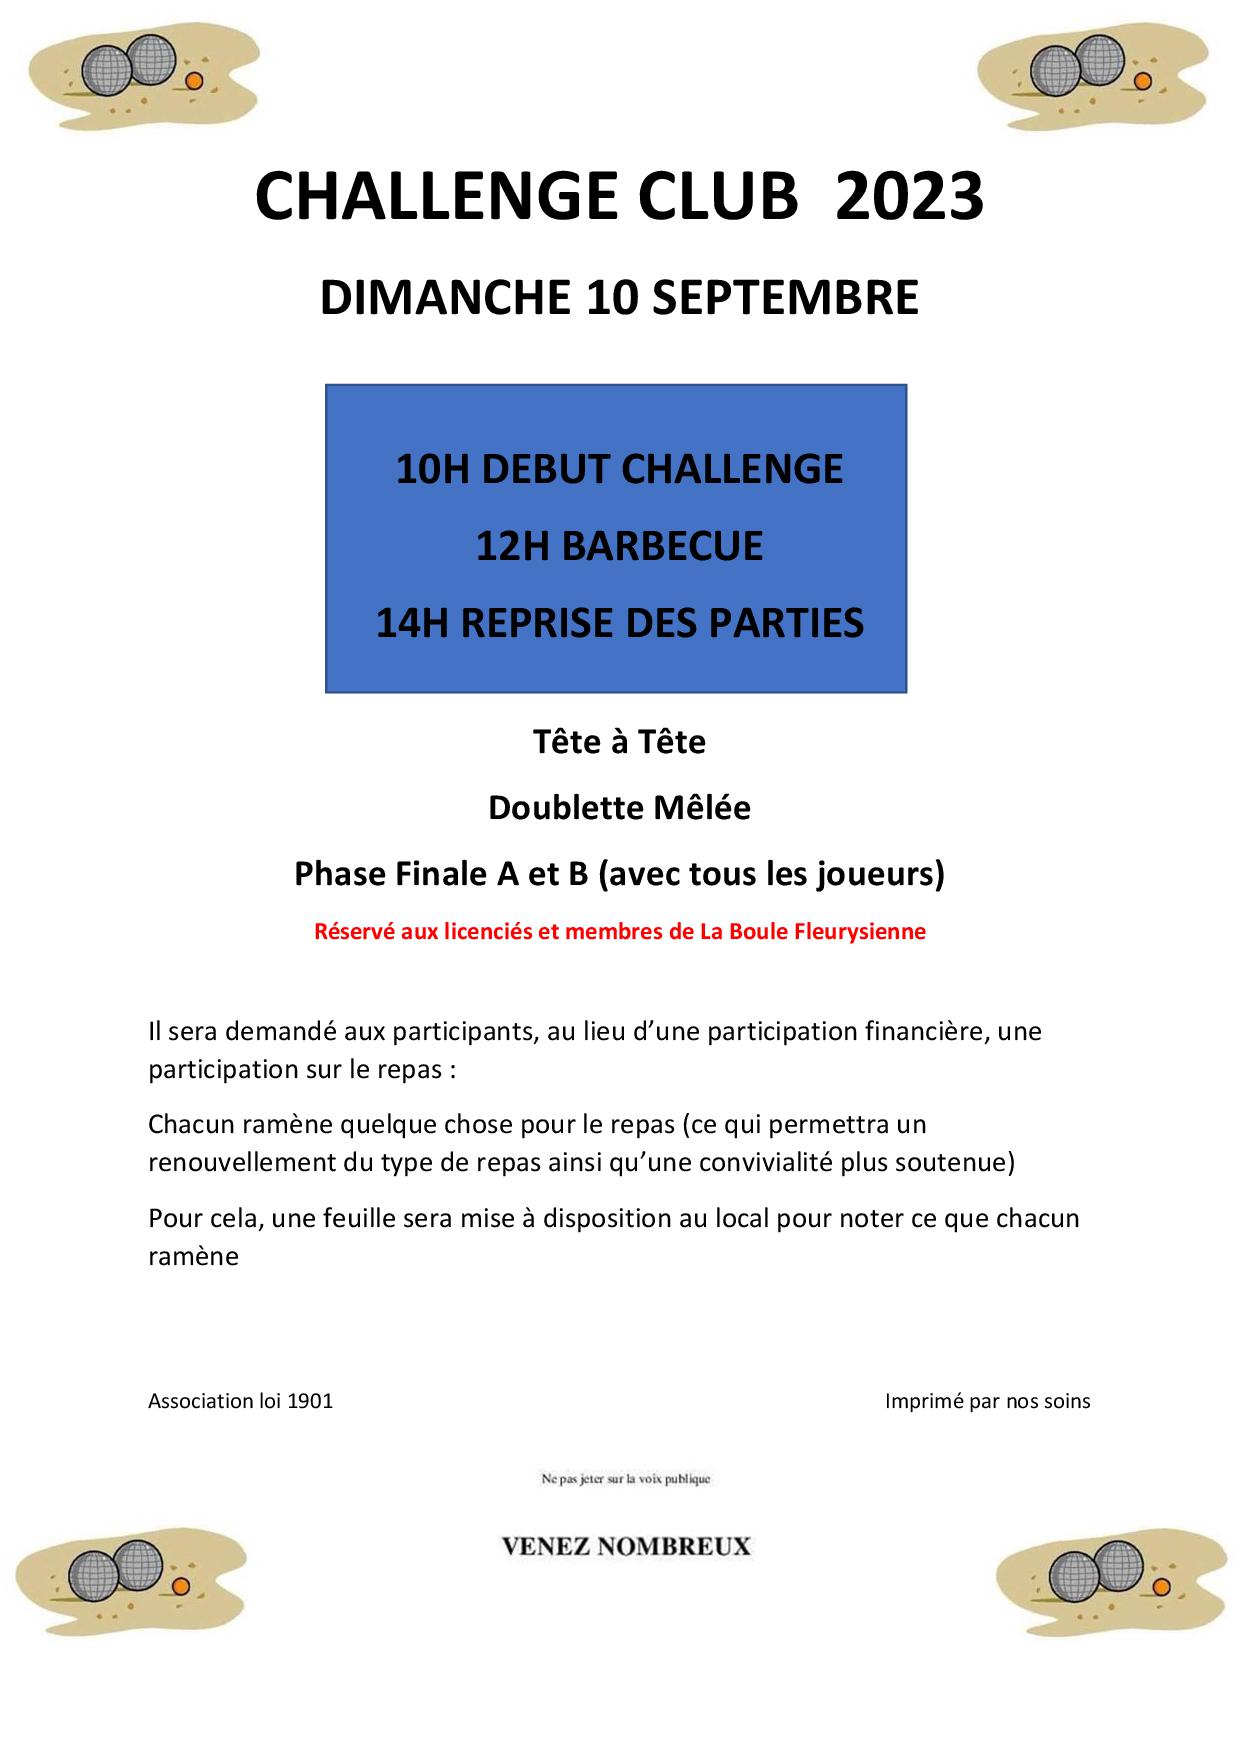 Challenge 2023 de La Boule Fleurysienne dimanche 10 Septembre